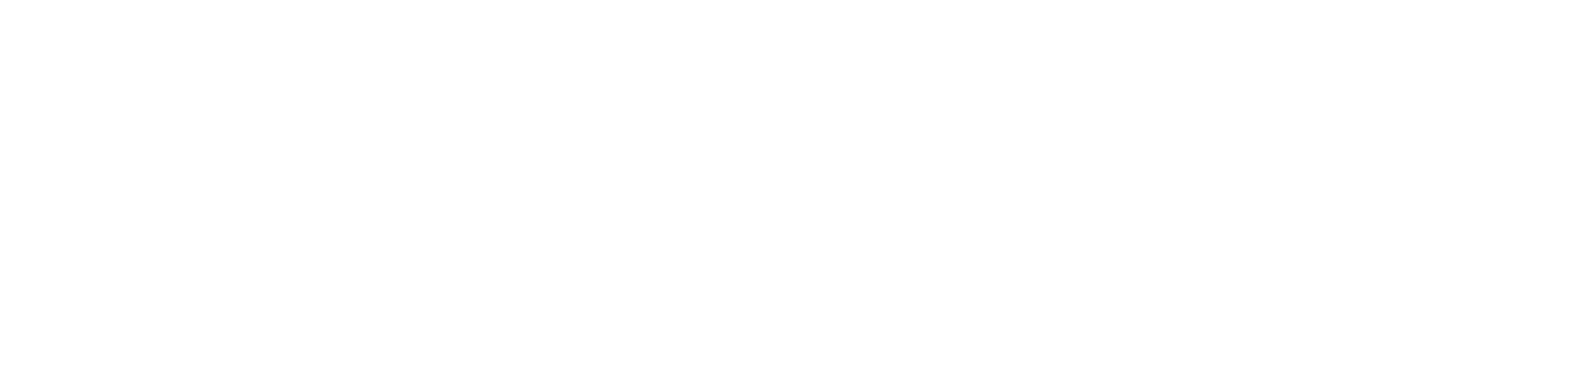 OHB SE logo pour fonds sombres (PNG transparent)